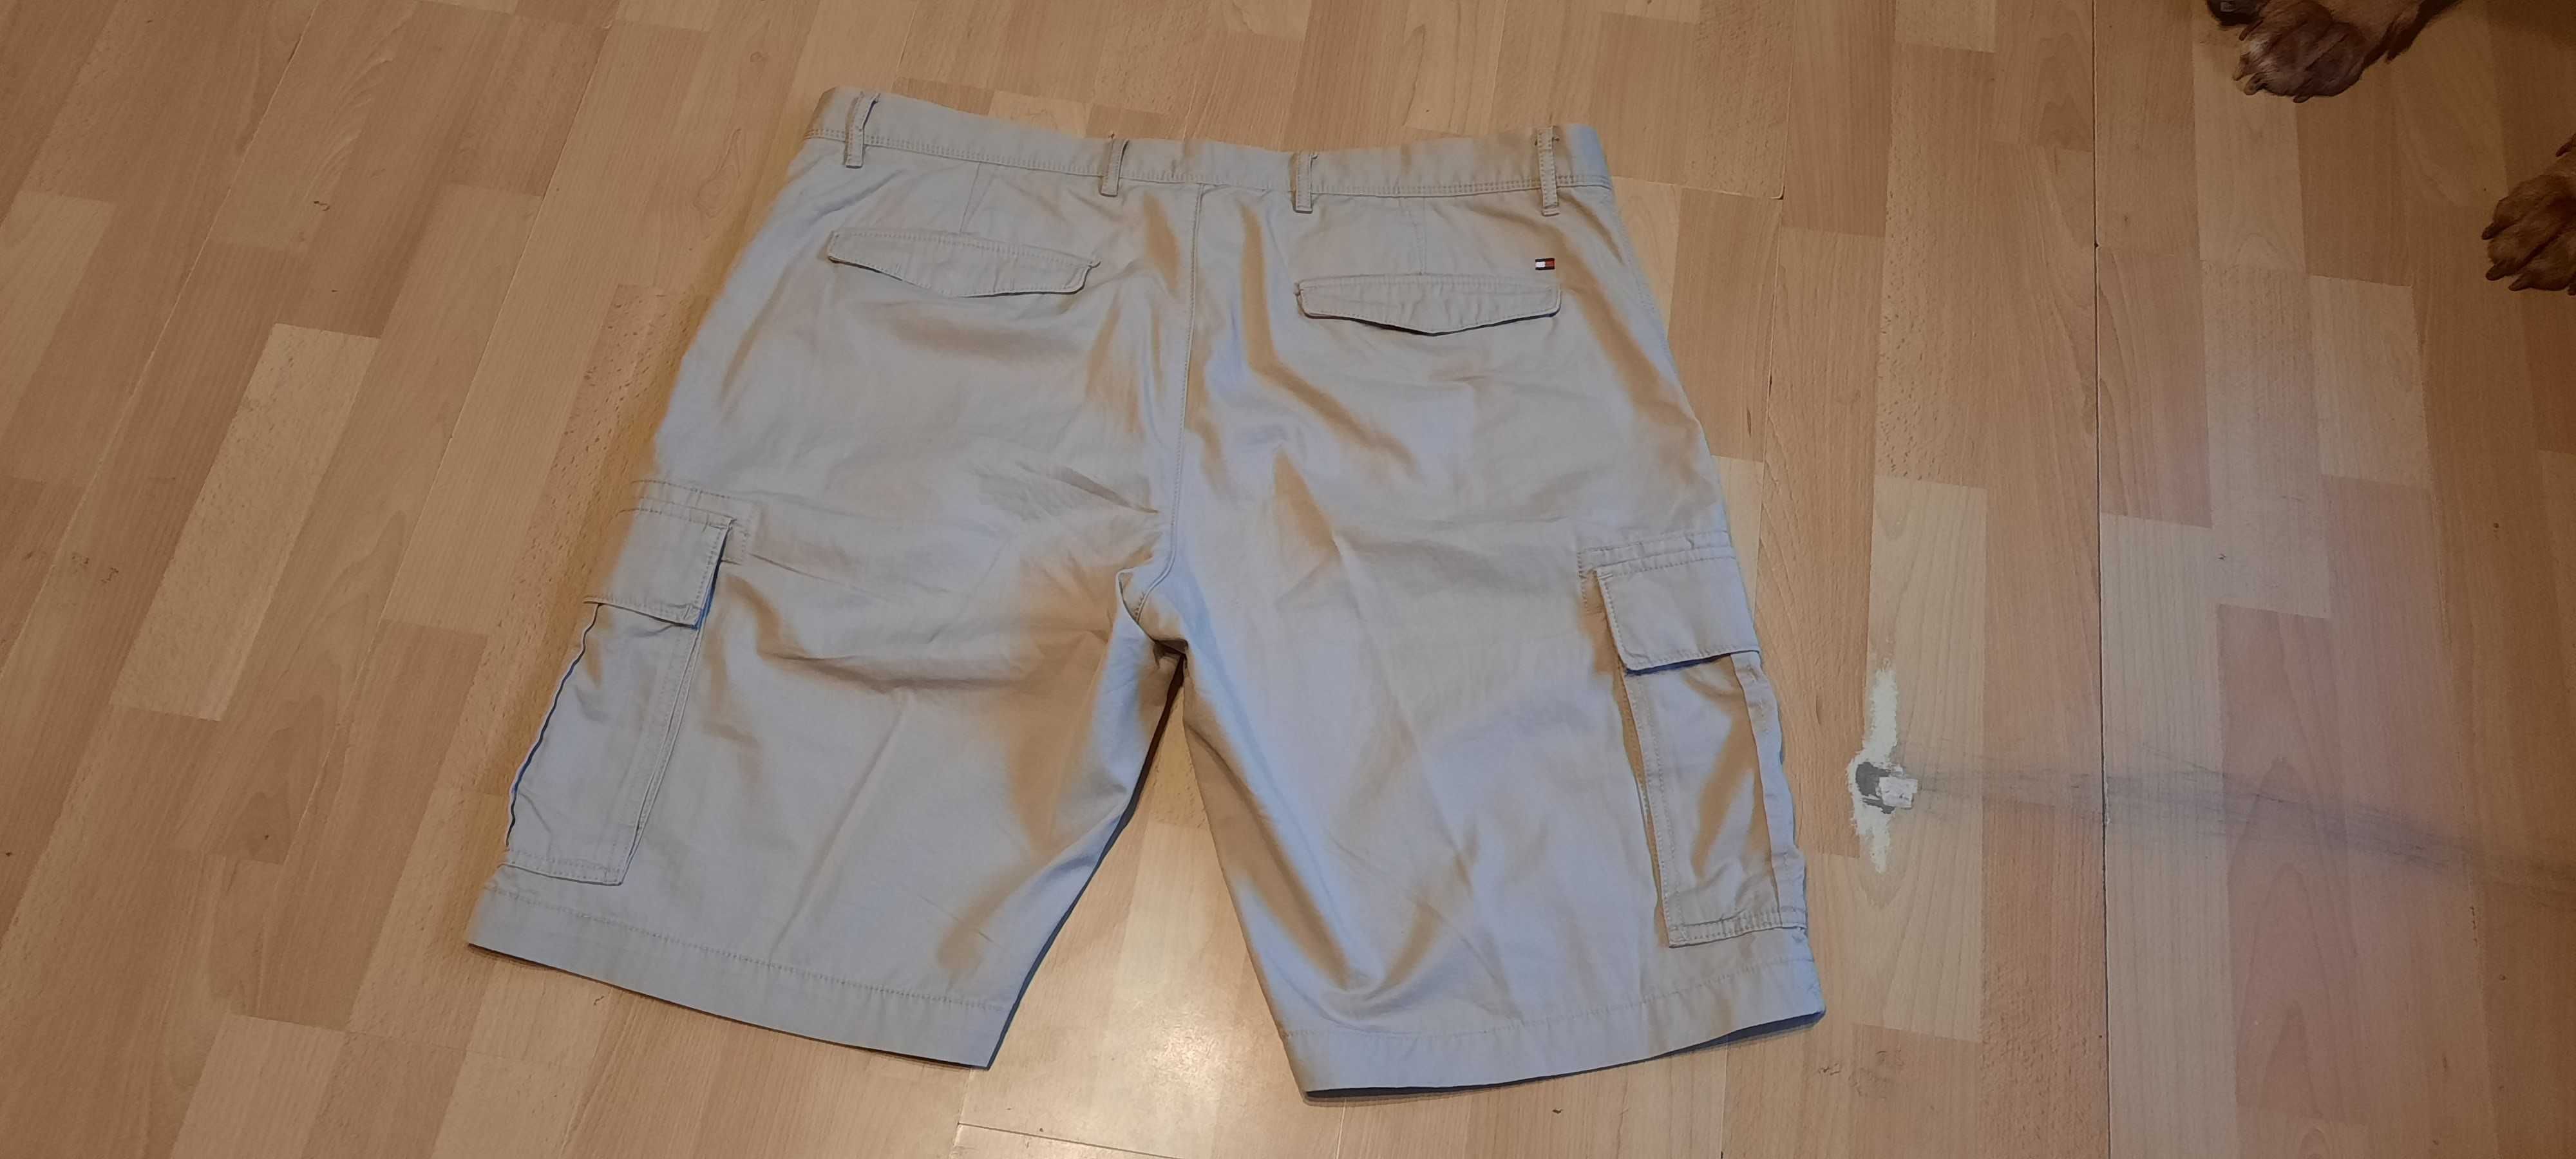 Krótkie spodnie TOMMY HILFIGER r.XL (W40) stan idealny